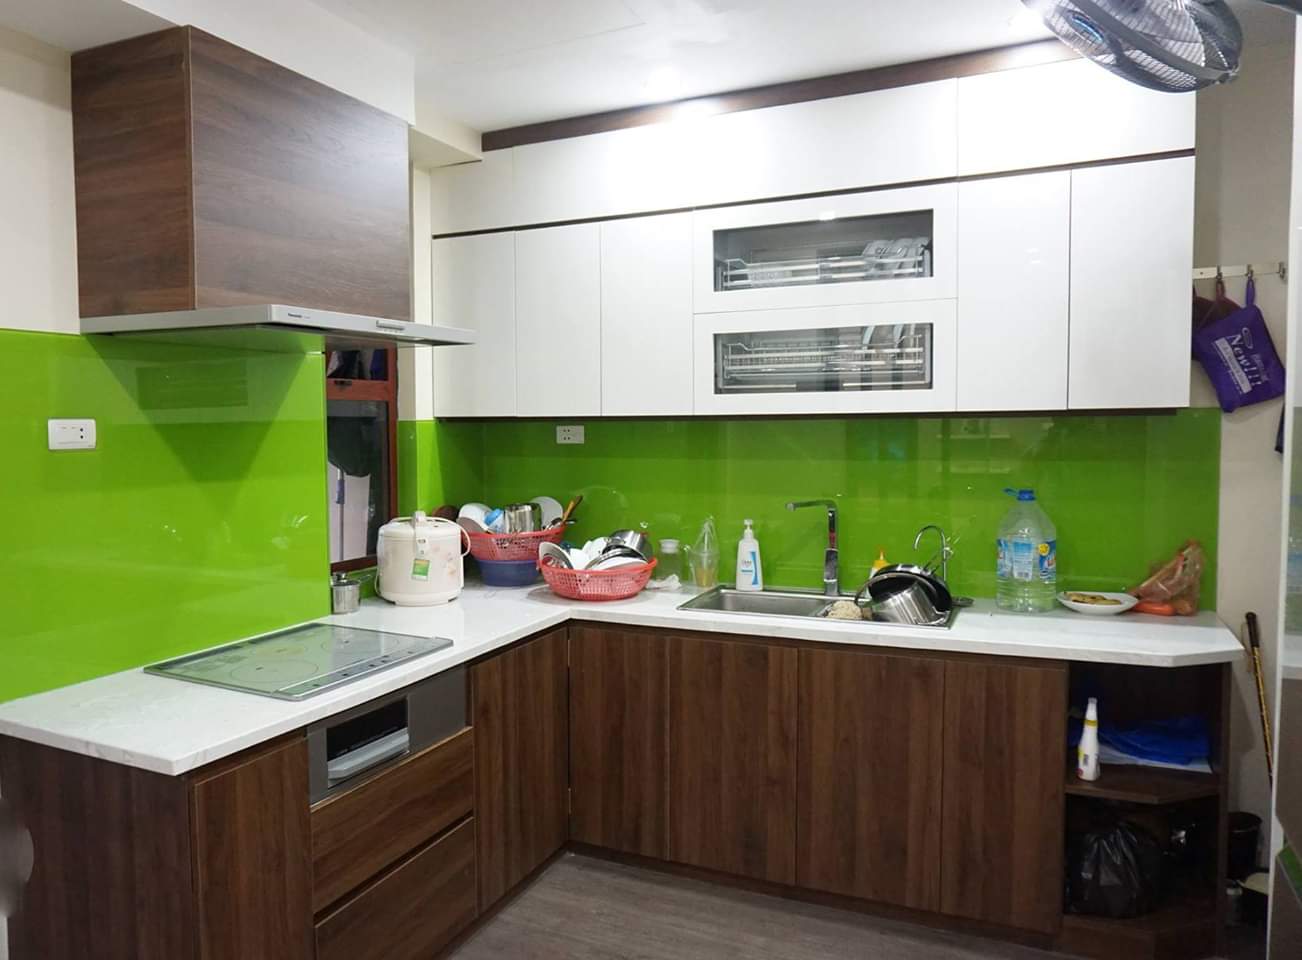 Tủ bếp Melamine trắng kết hợp màu vân gỗ ấm cúng, hiện đại - tủ bếp Melamine 2020